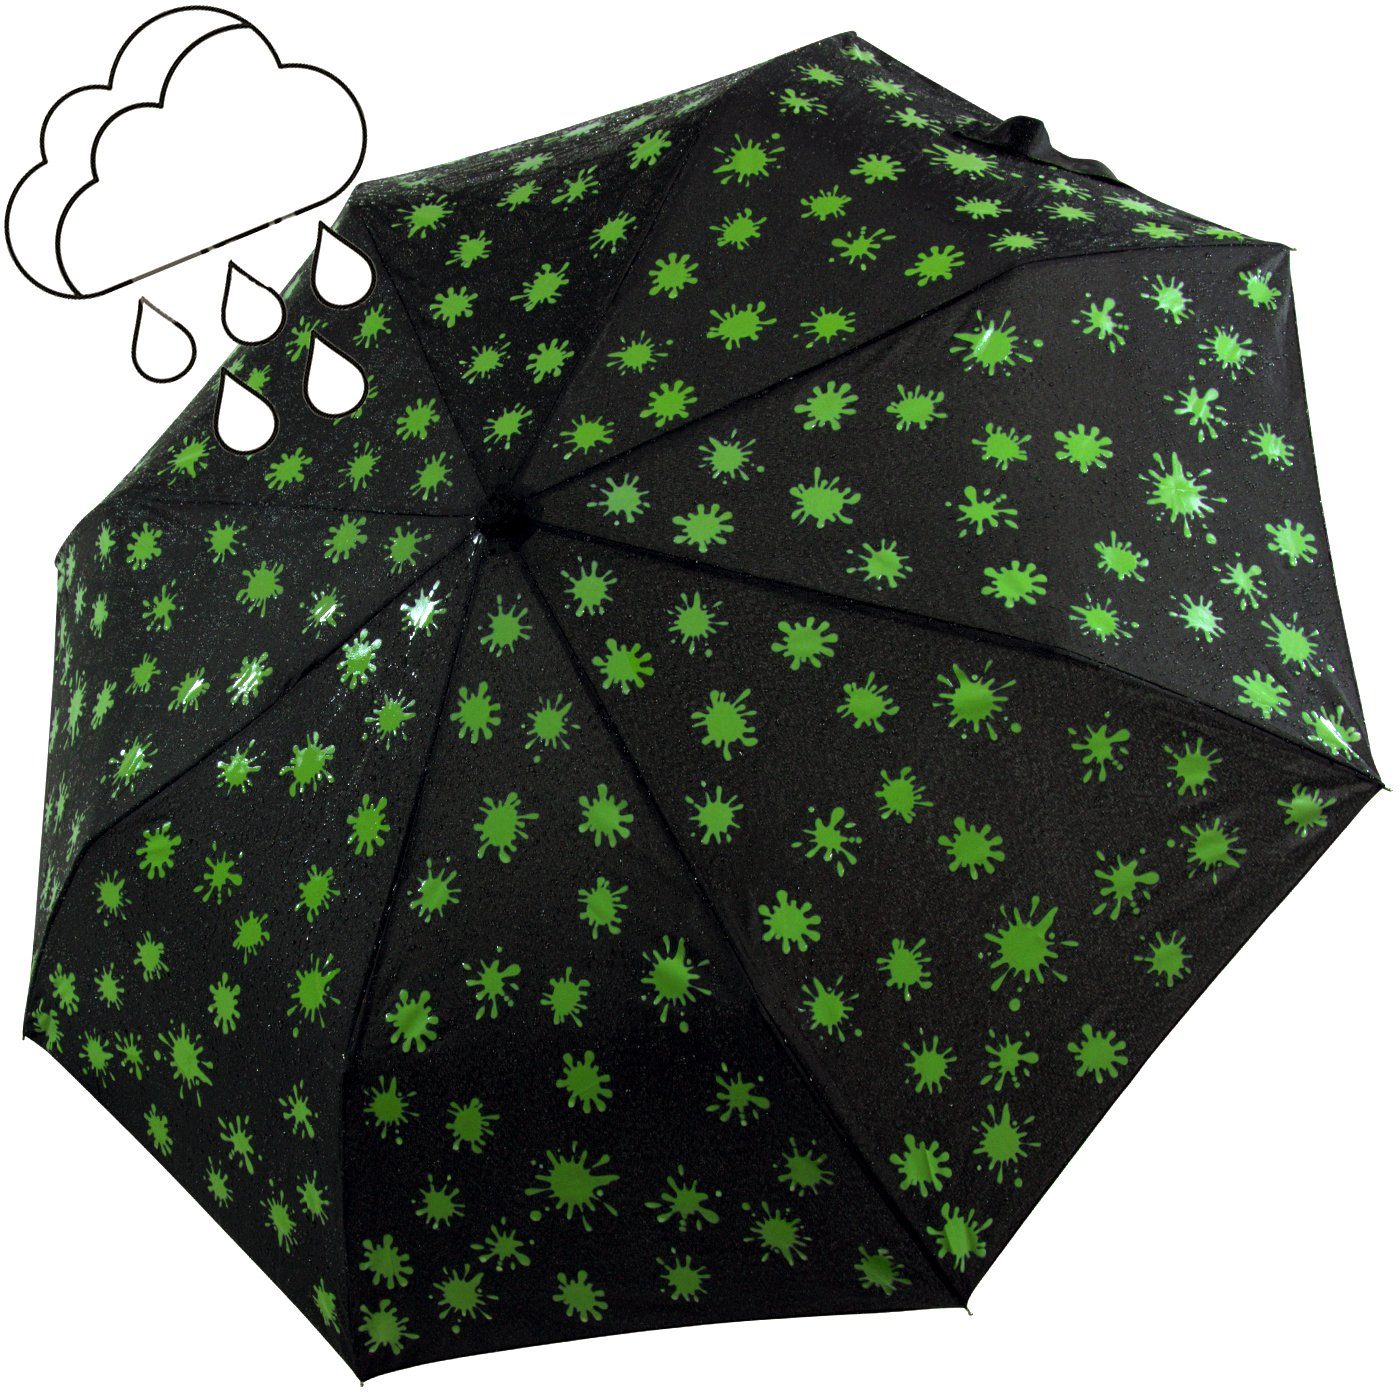 iX-brella Dach Ultra - neon-grün - schwarz-weiß-neongrün - Farbänderung Taschenregenschirm Mini Nässe großem Farbkleckse bei leicht, Light extra mit